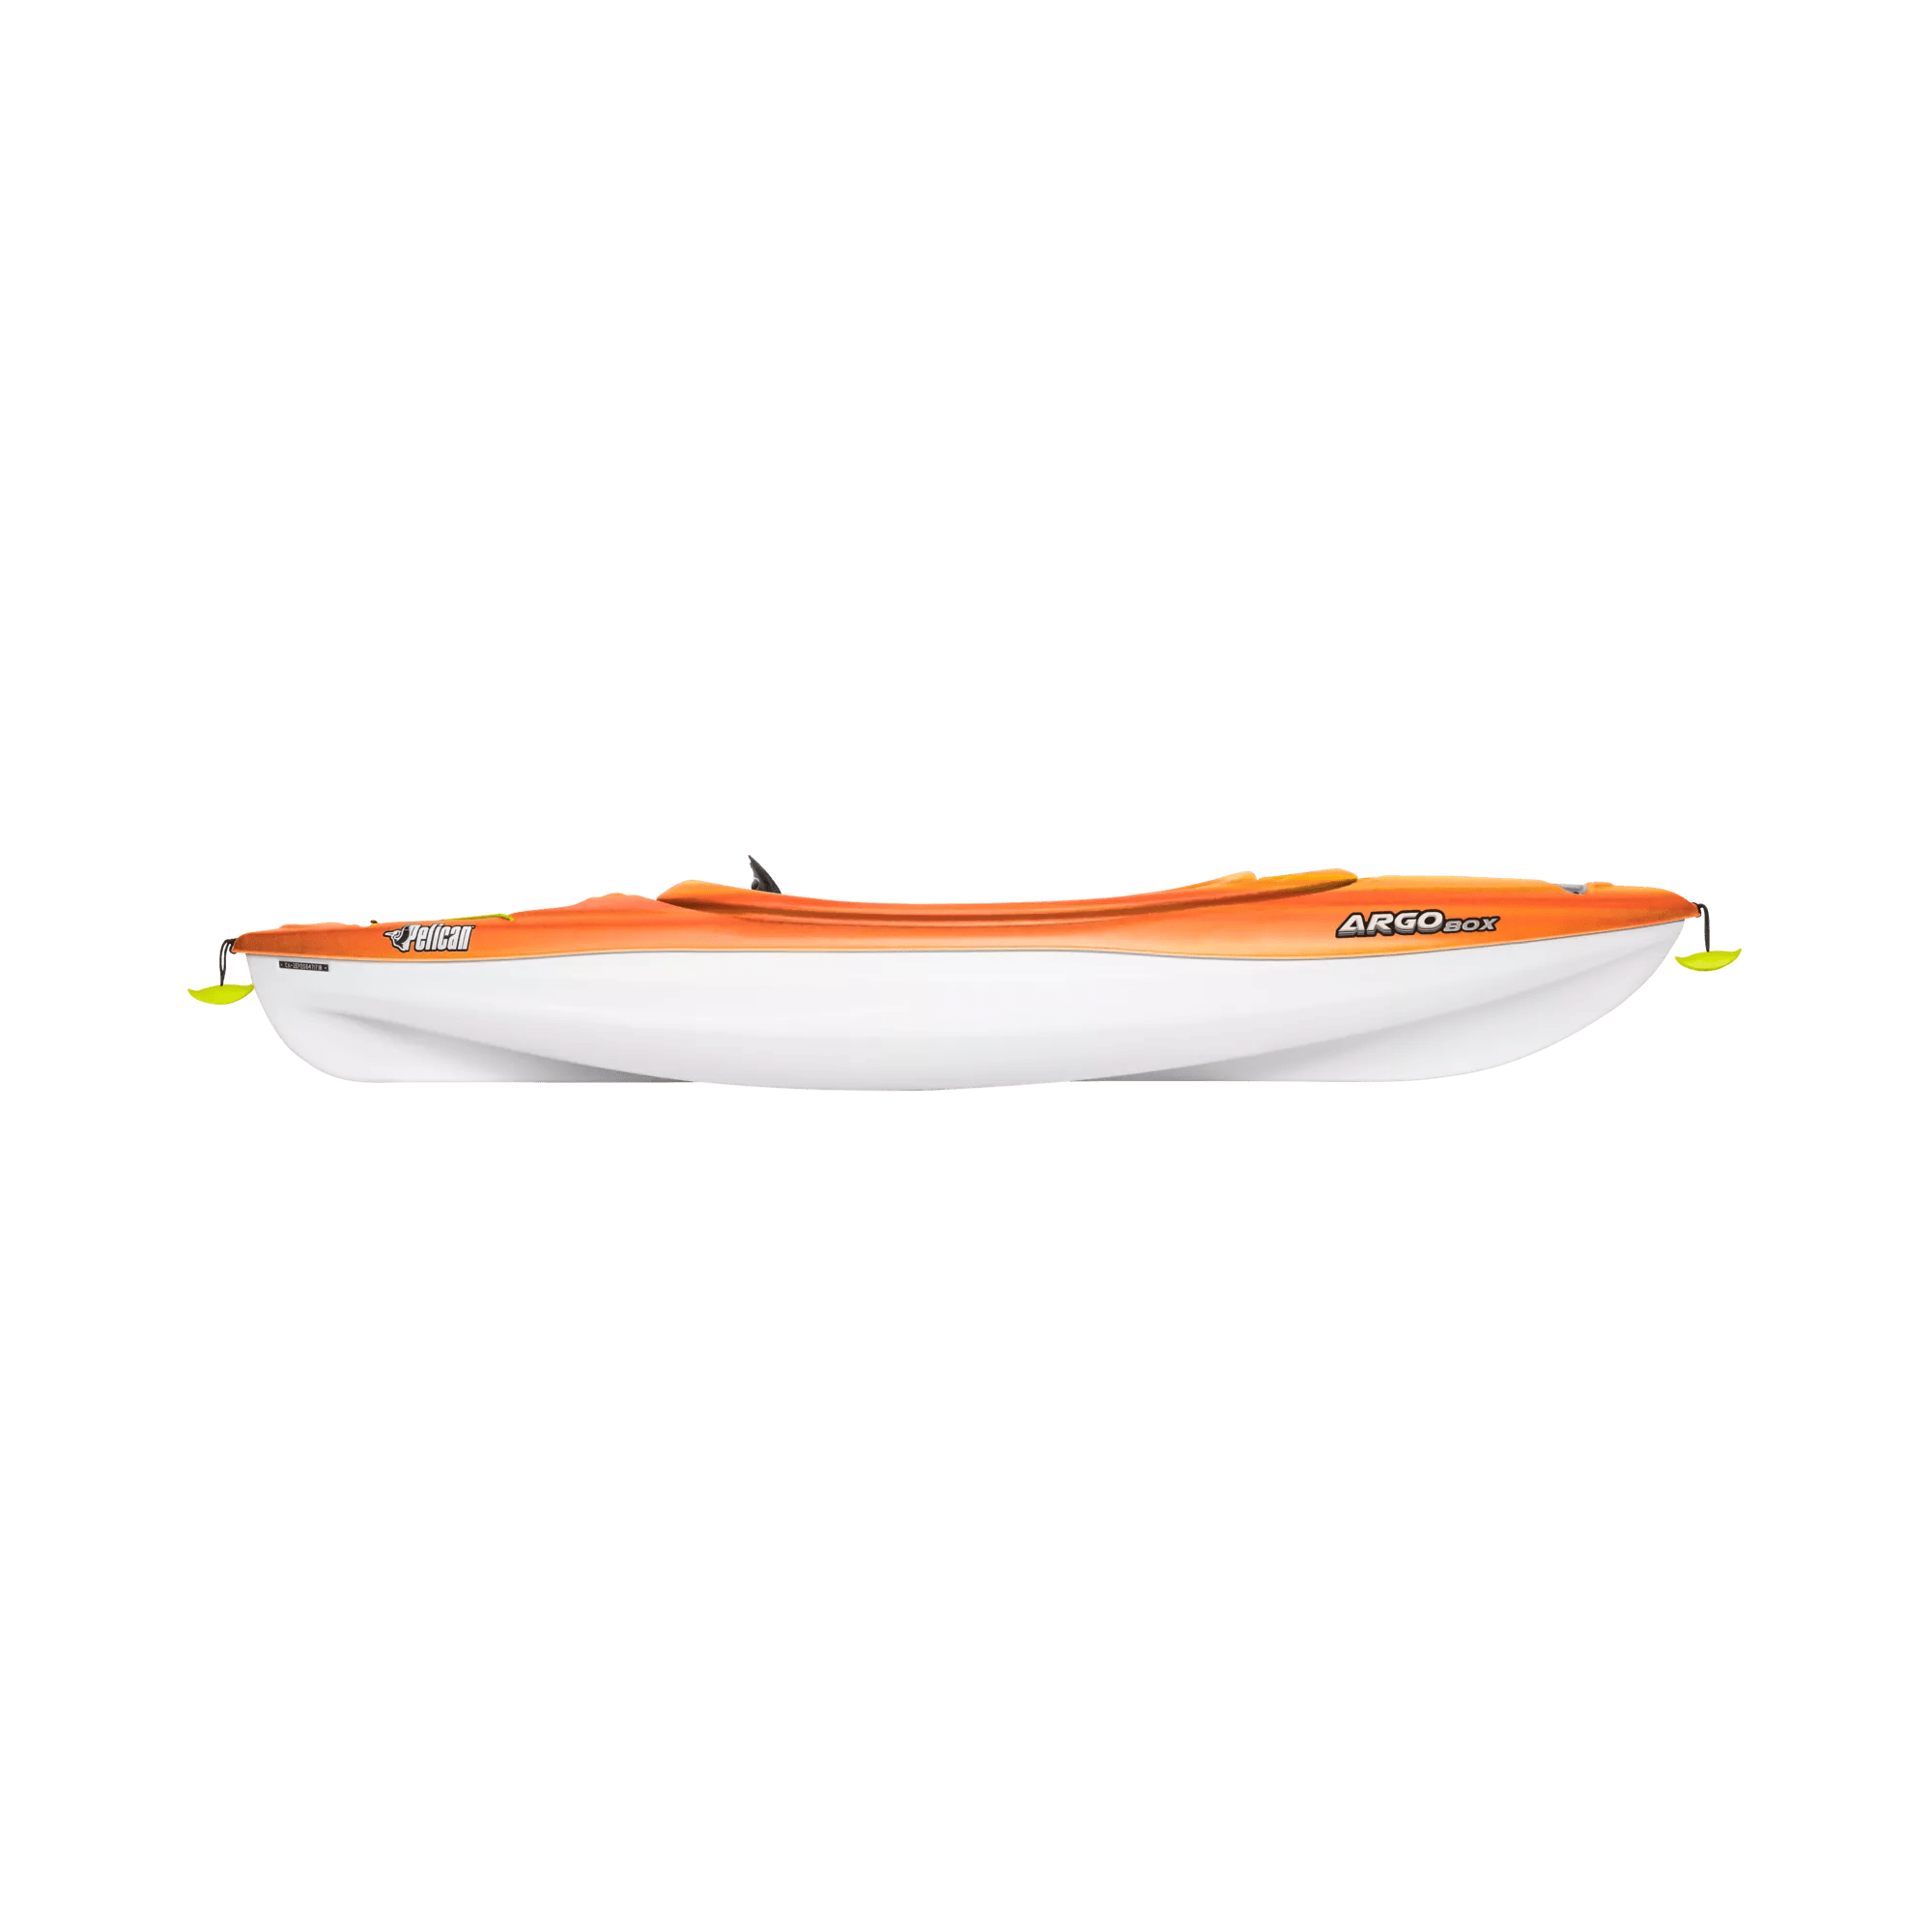 PELICAN - Argo 80X Recreational Kayak - Yellow - KFF08P109 - SIDE